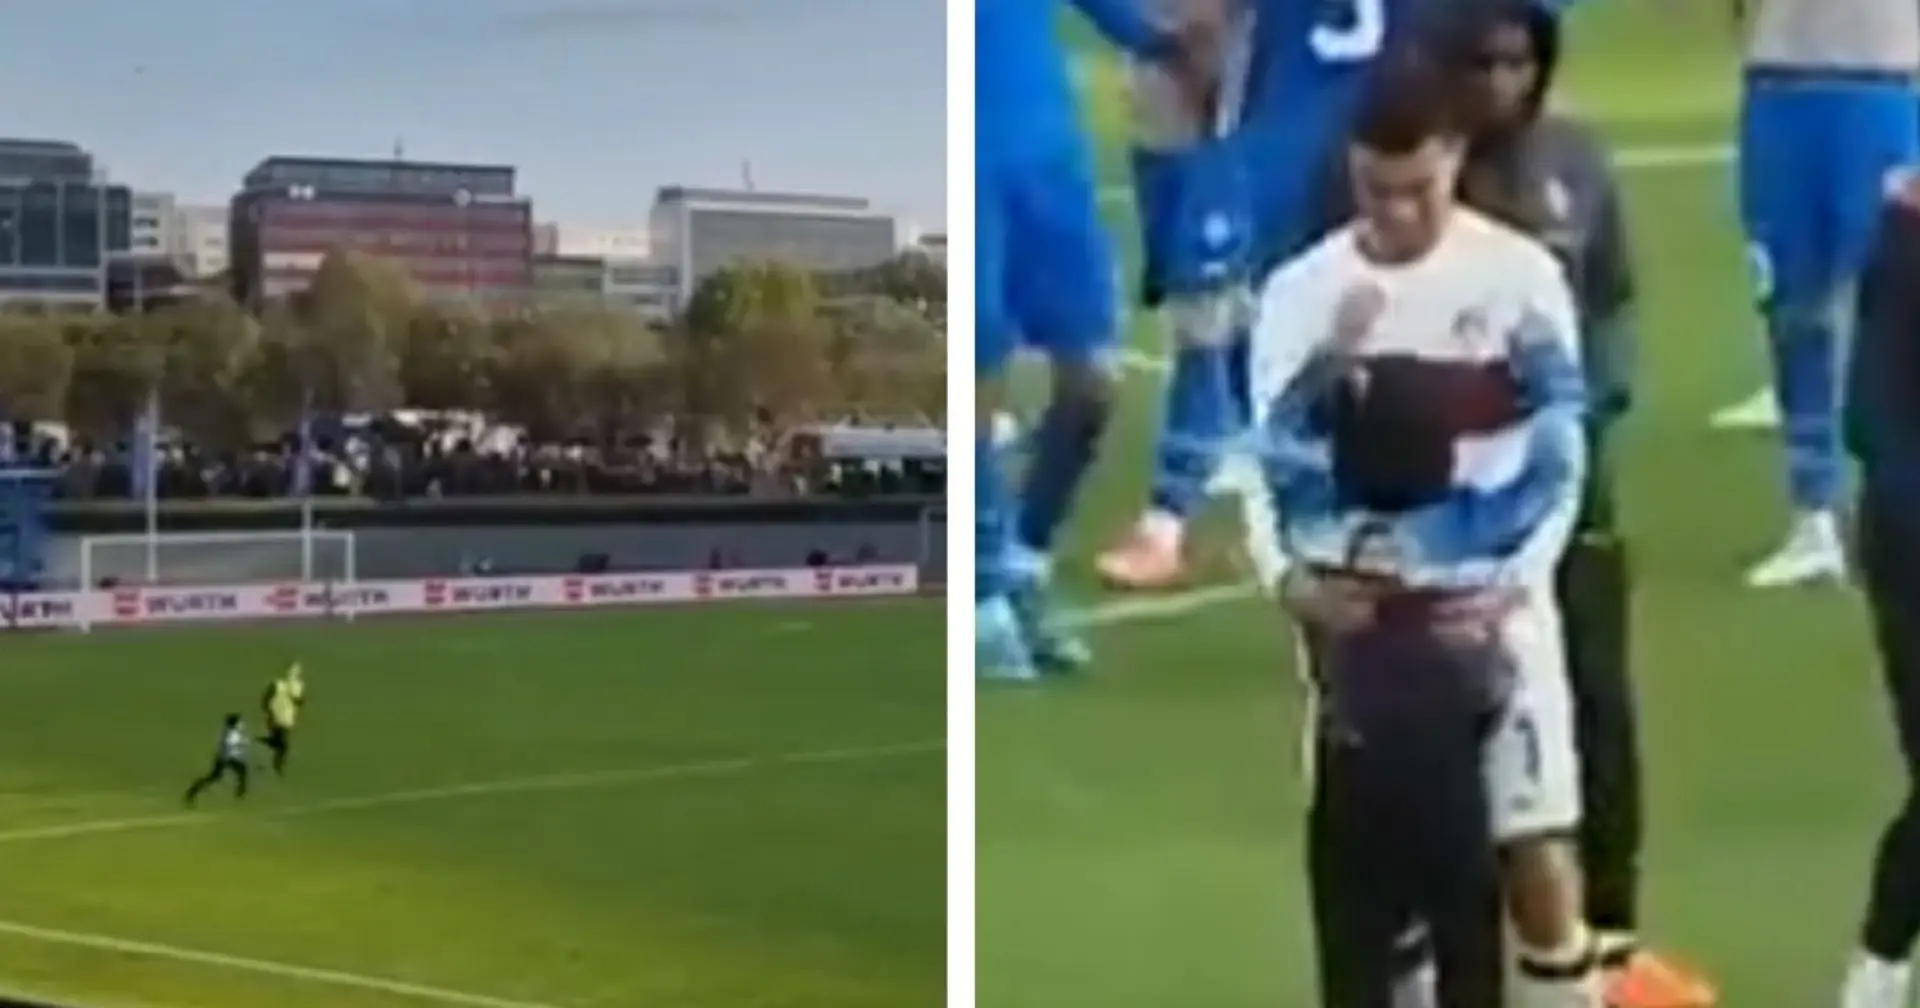 ❤️ Nette Geste: Ronaldo verteidigte einen Fan, der auf das Feld lief, vor den Stewards, und machte dann Selfies mit ihm